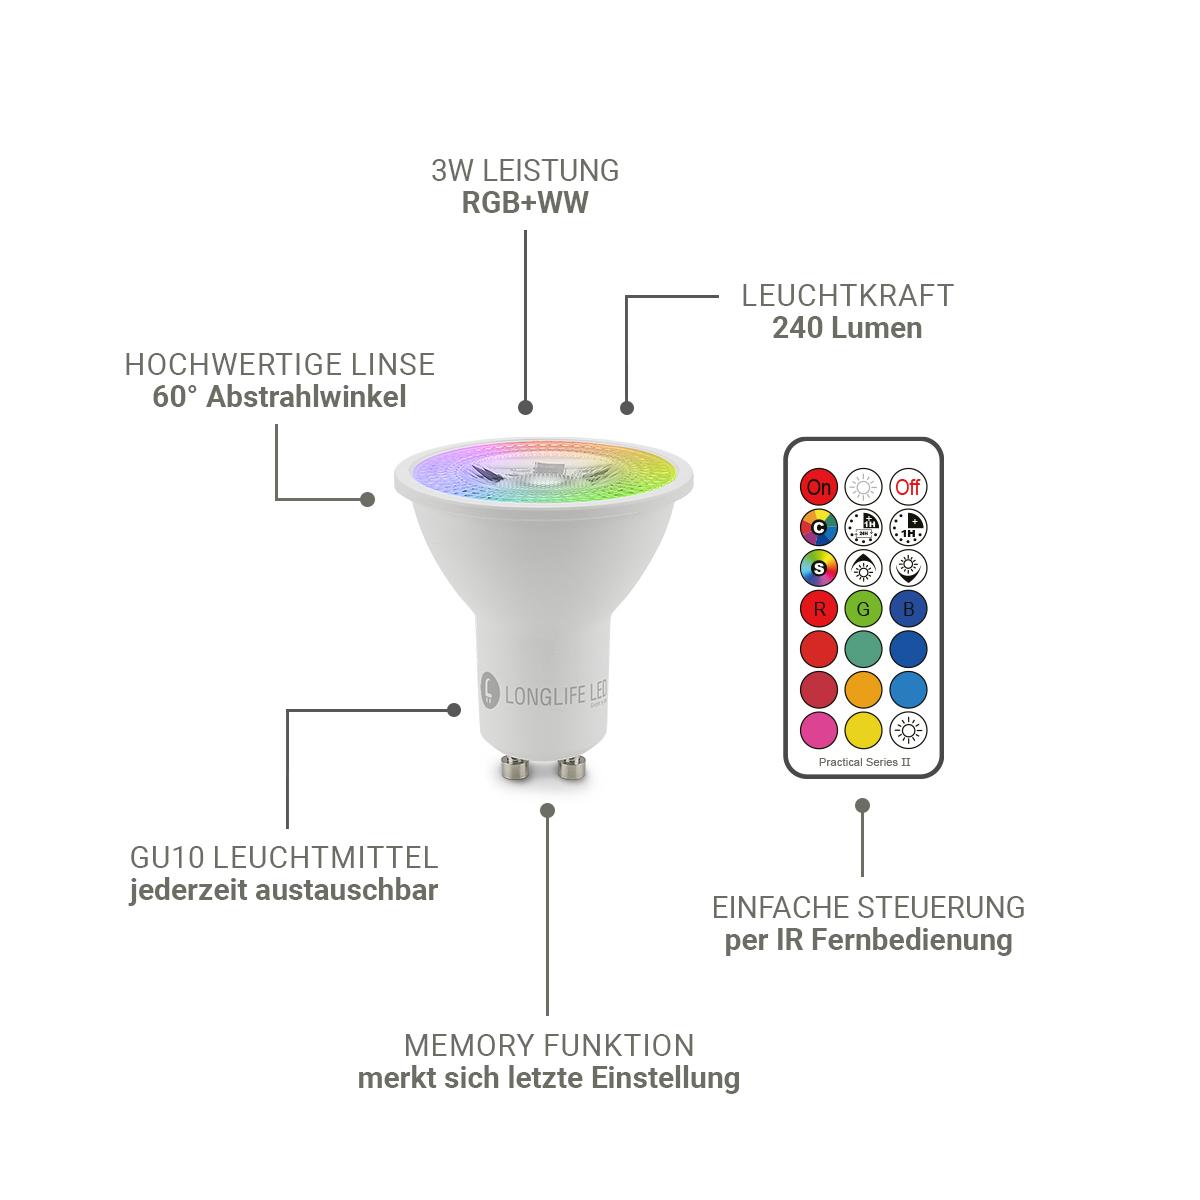 LED Bodeneinbaustrahler Schwarz eckig 230V IP67 - Leuchtmittel: GU10 3W RGBW ink. IR Fernbedienung - Anzahl: 3x